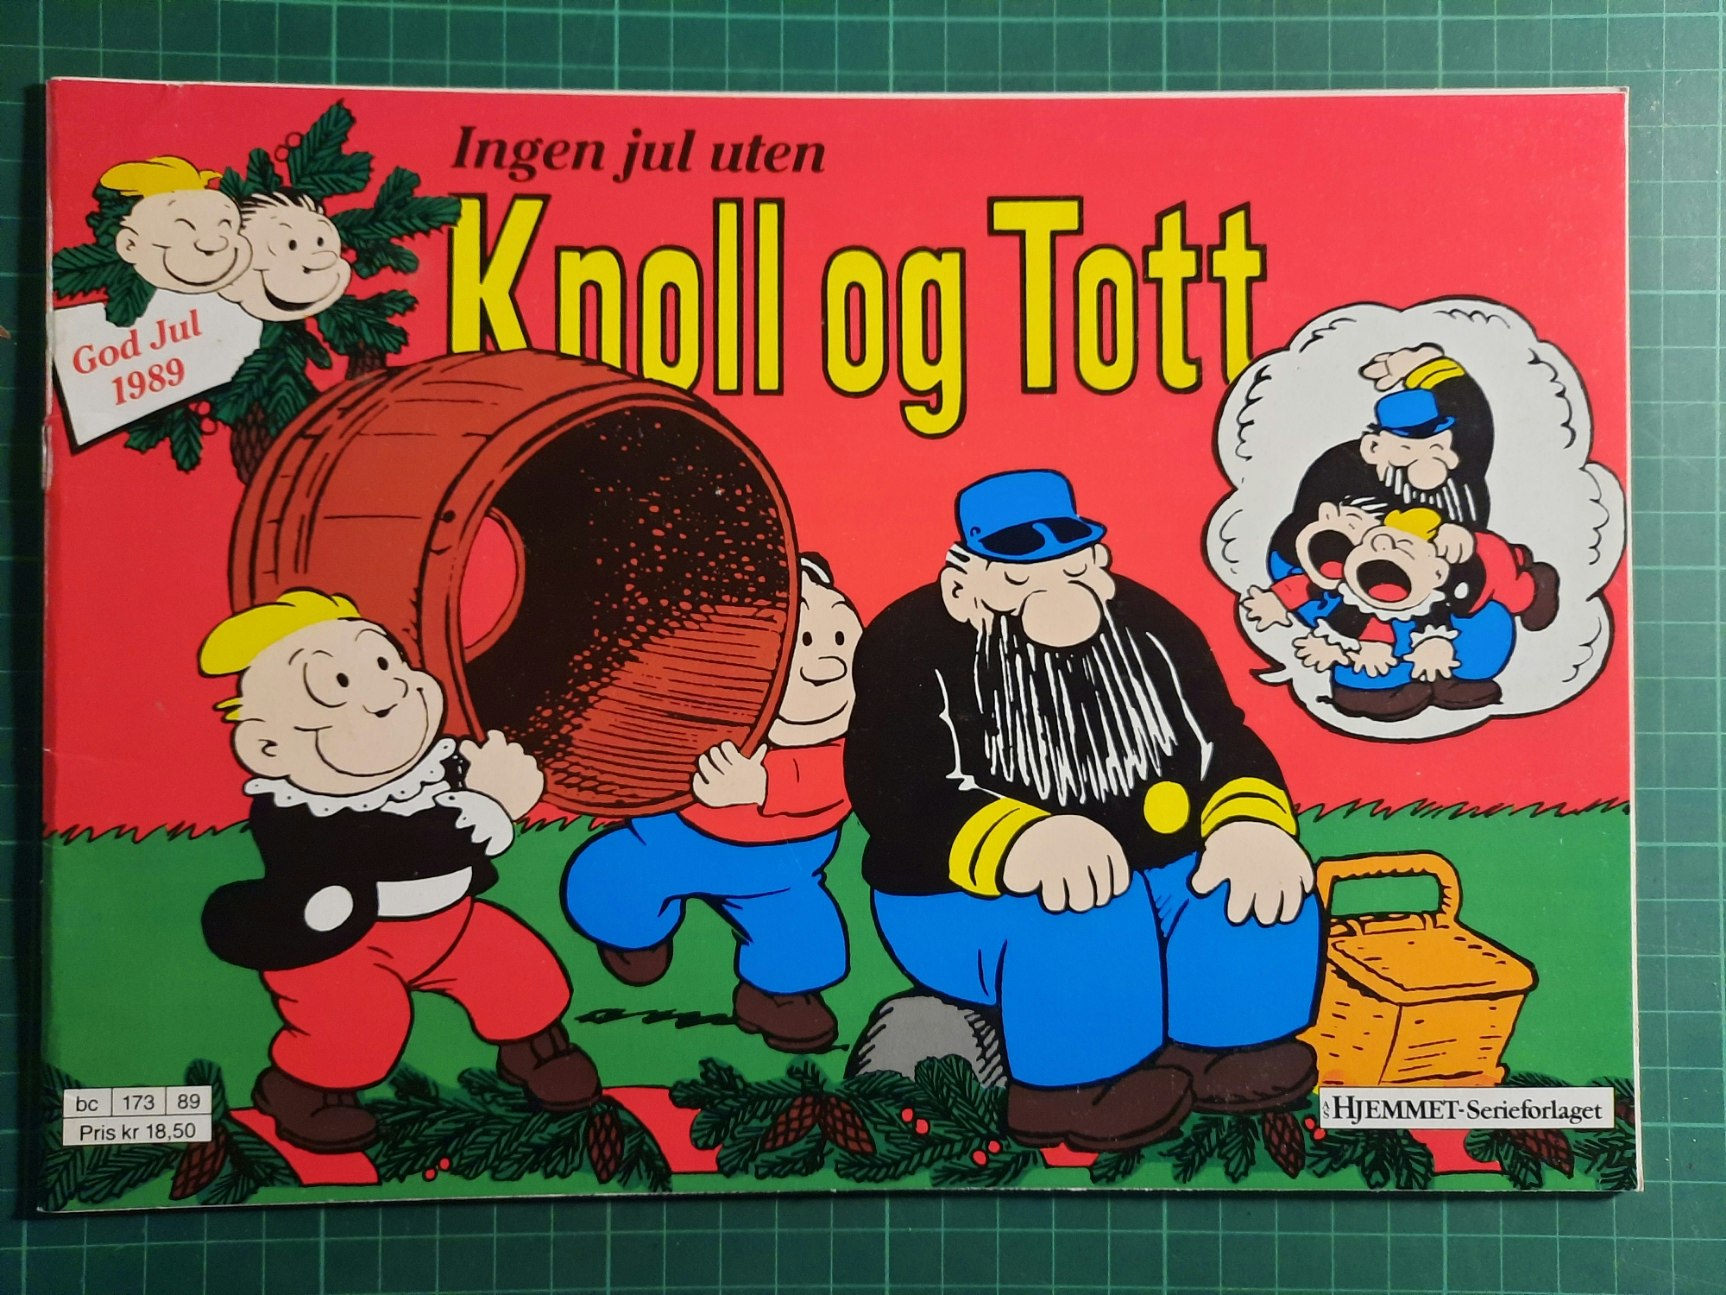 Knoll og Tott 1989